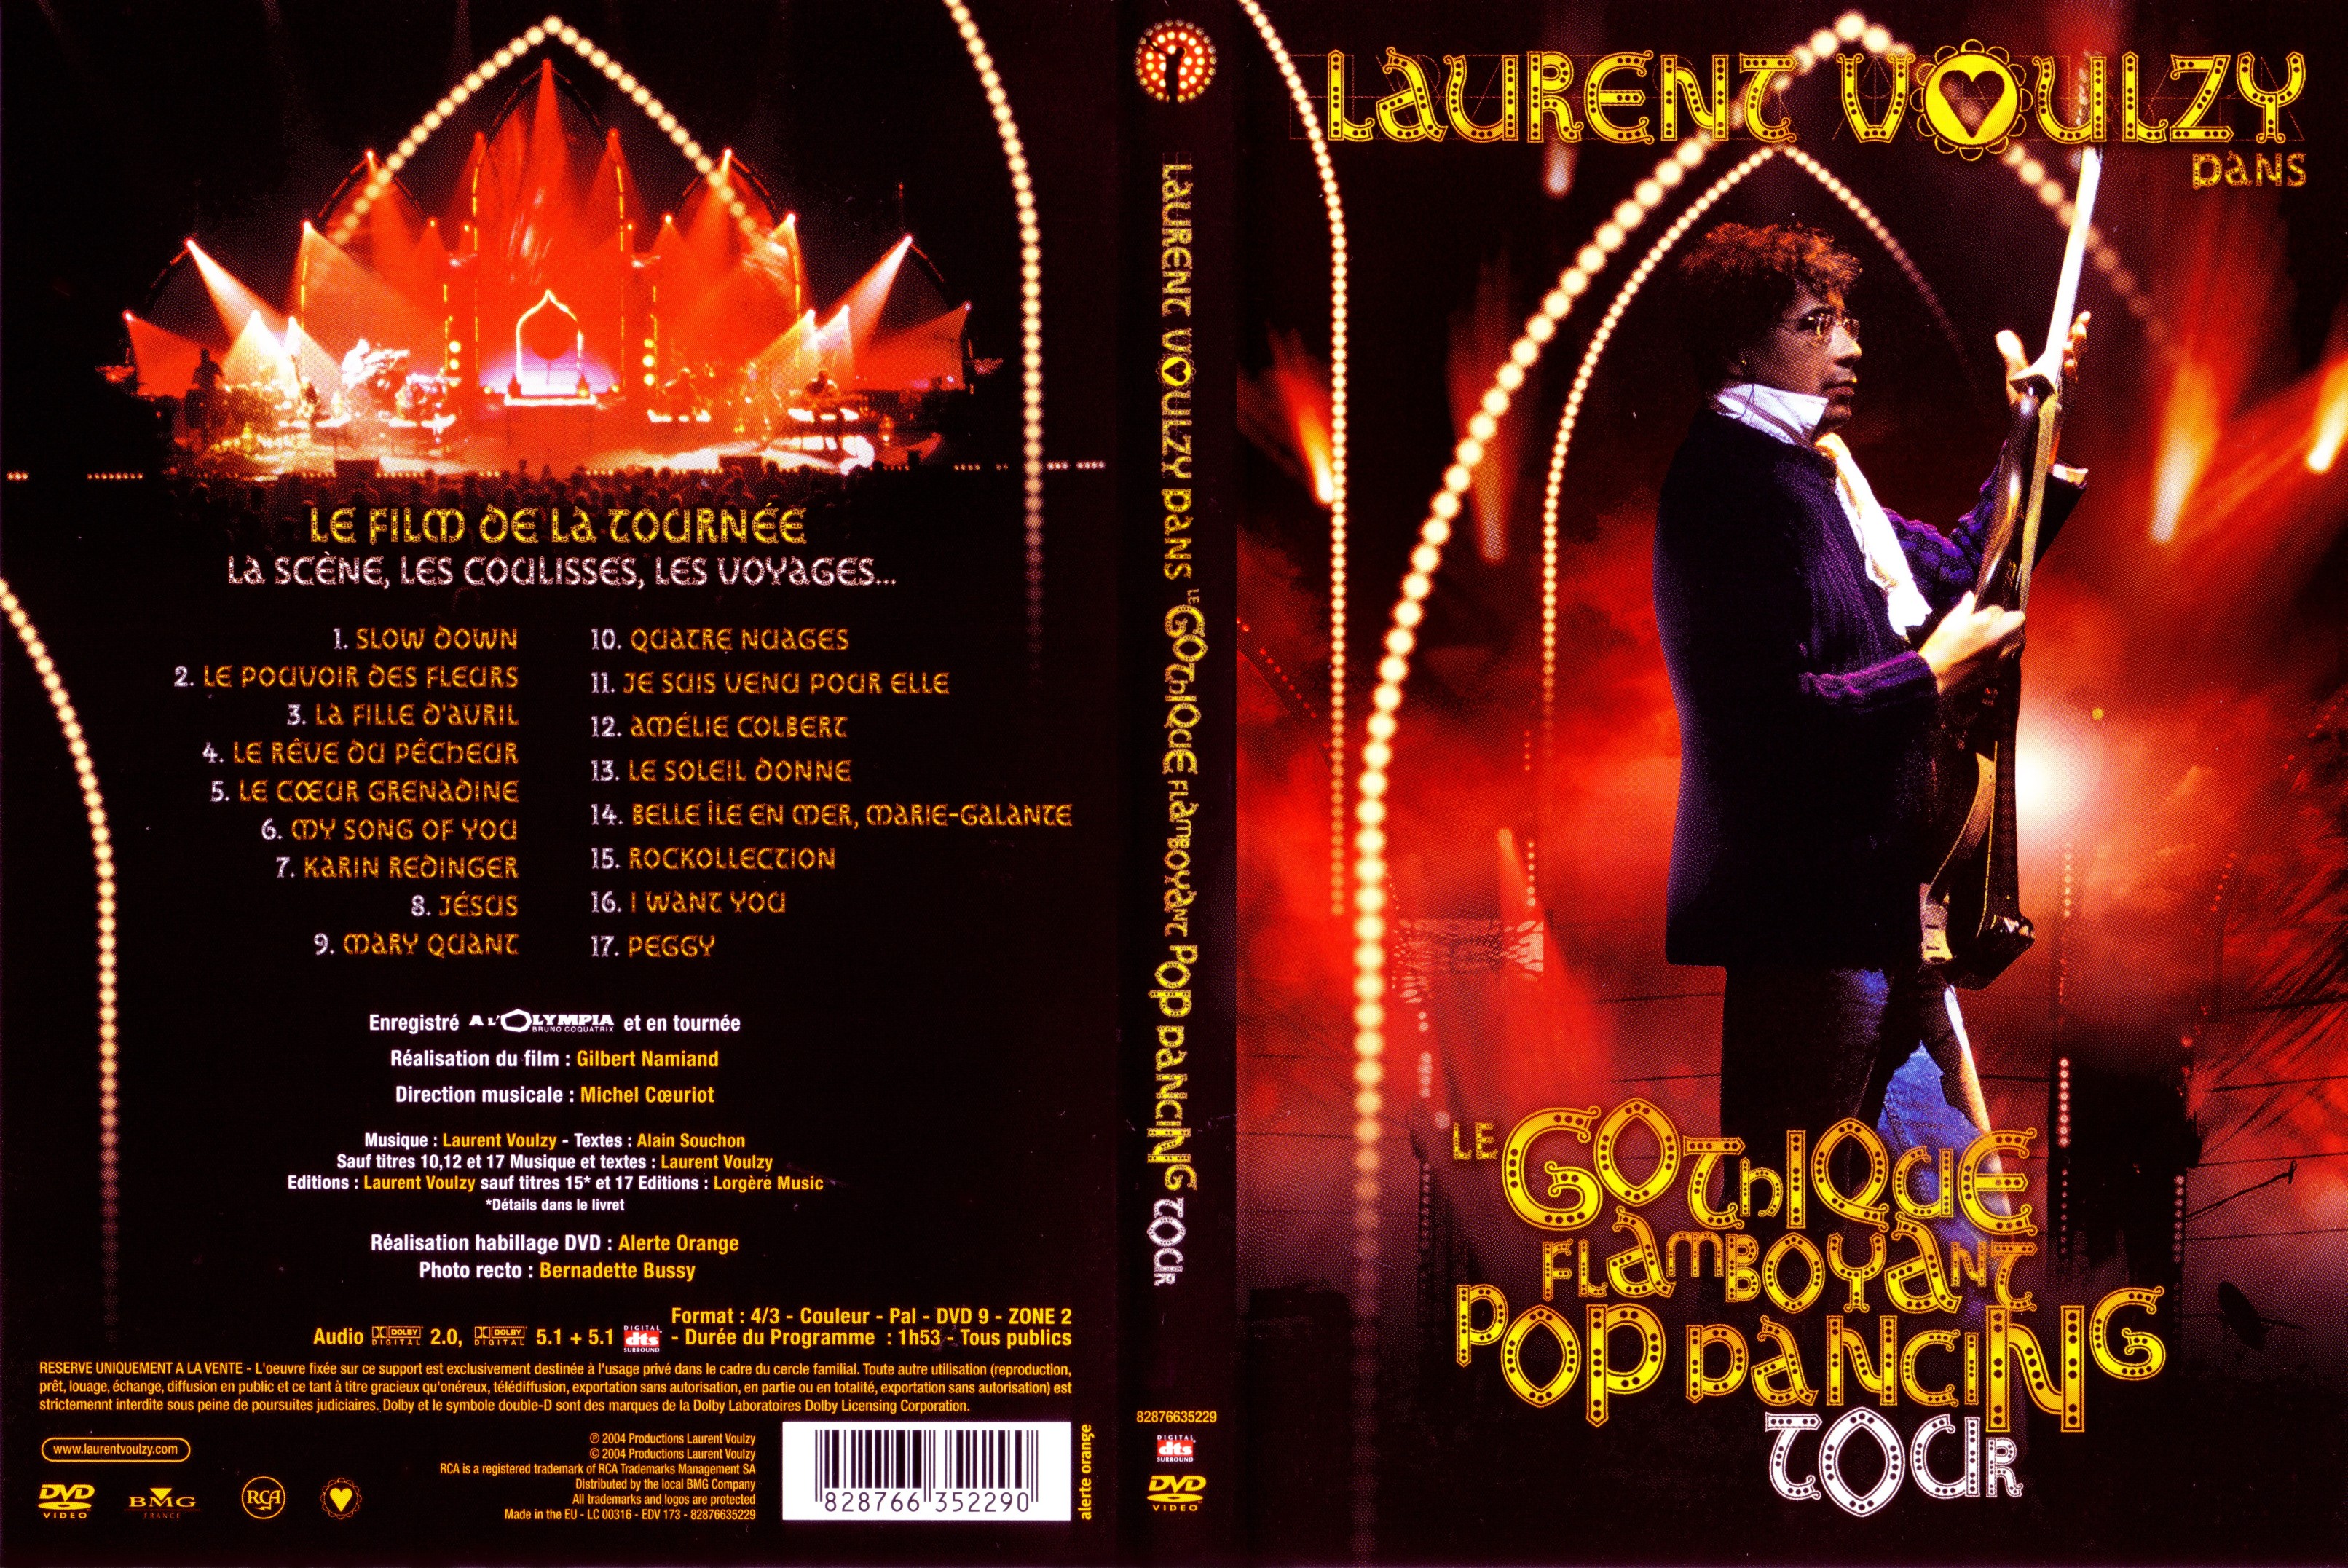 Jaquette DVD Laurent Voulzy Le gothique flamboyant pop dancing tour